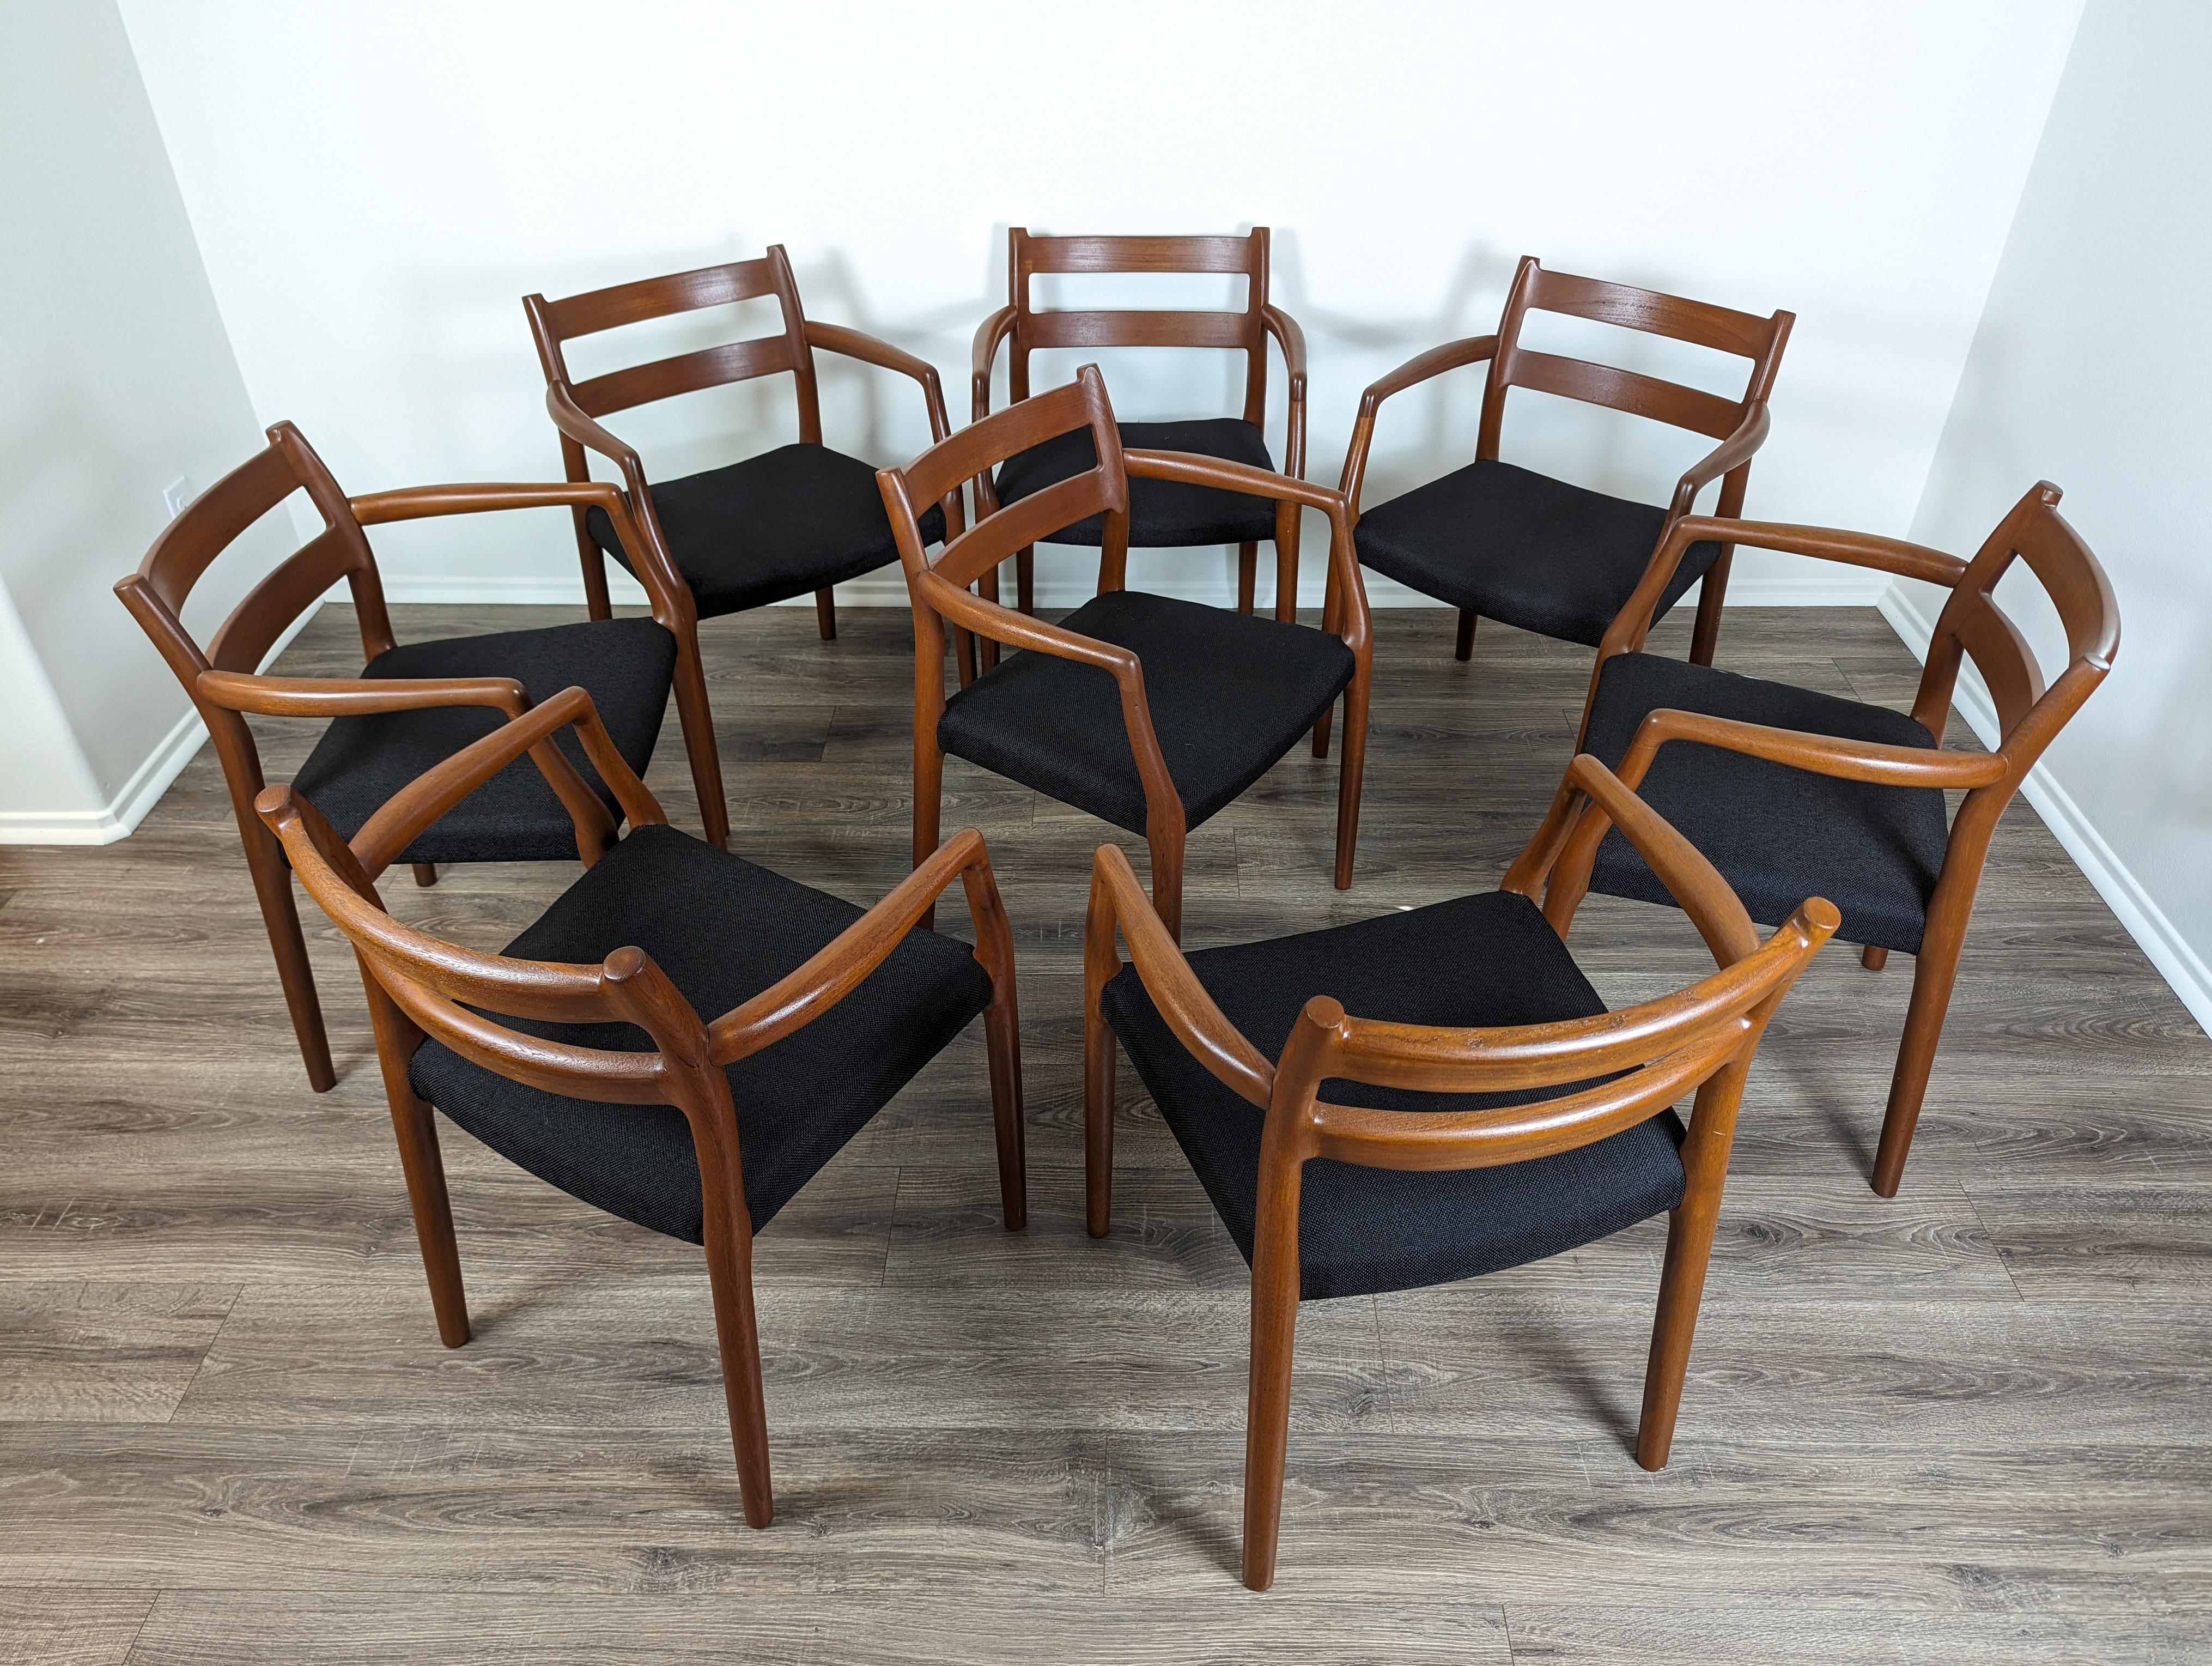 Der Inbegriff dänischen Designs - die authentischen Model 67 Moller Chairs aus Dänemark. Tauchen Sie mit diesen sorgfältig gefertigten Teakholzstühlen in die Welt der modernen Mitte des Jahrhunderts ein. Diese vom legendären Niels Otto Møller